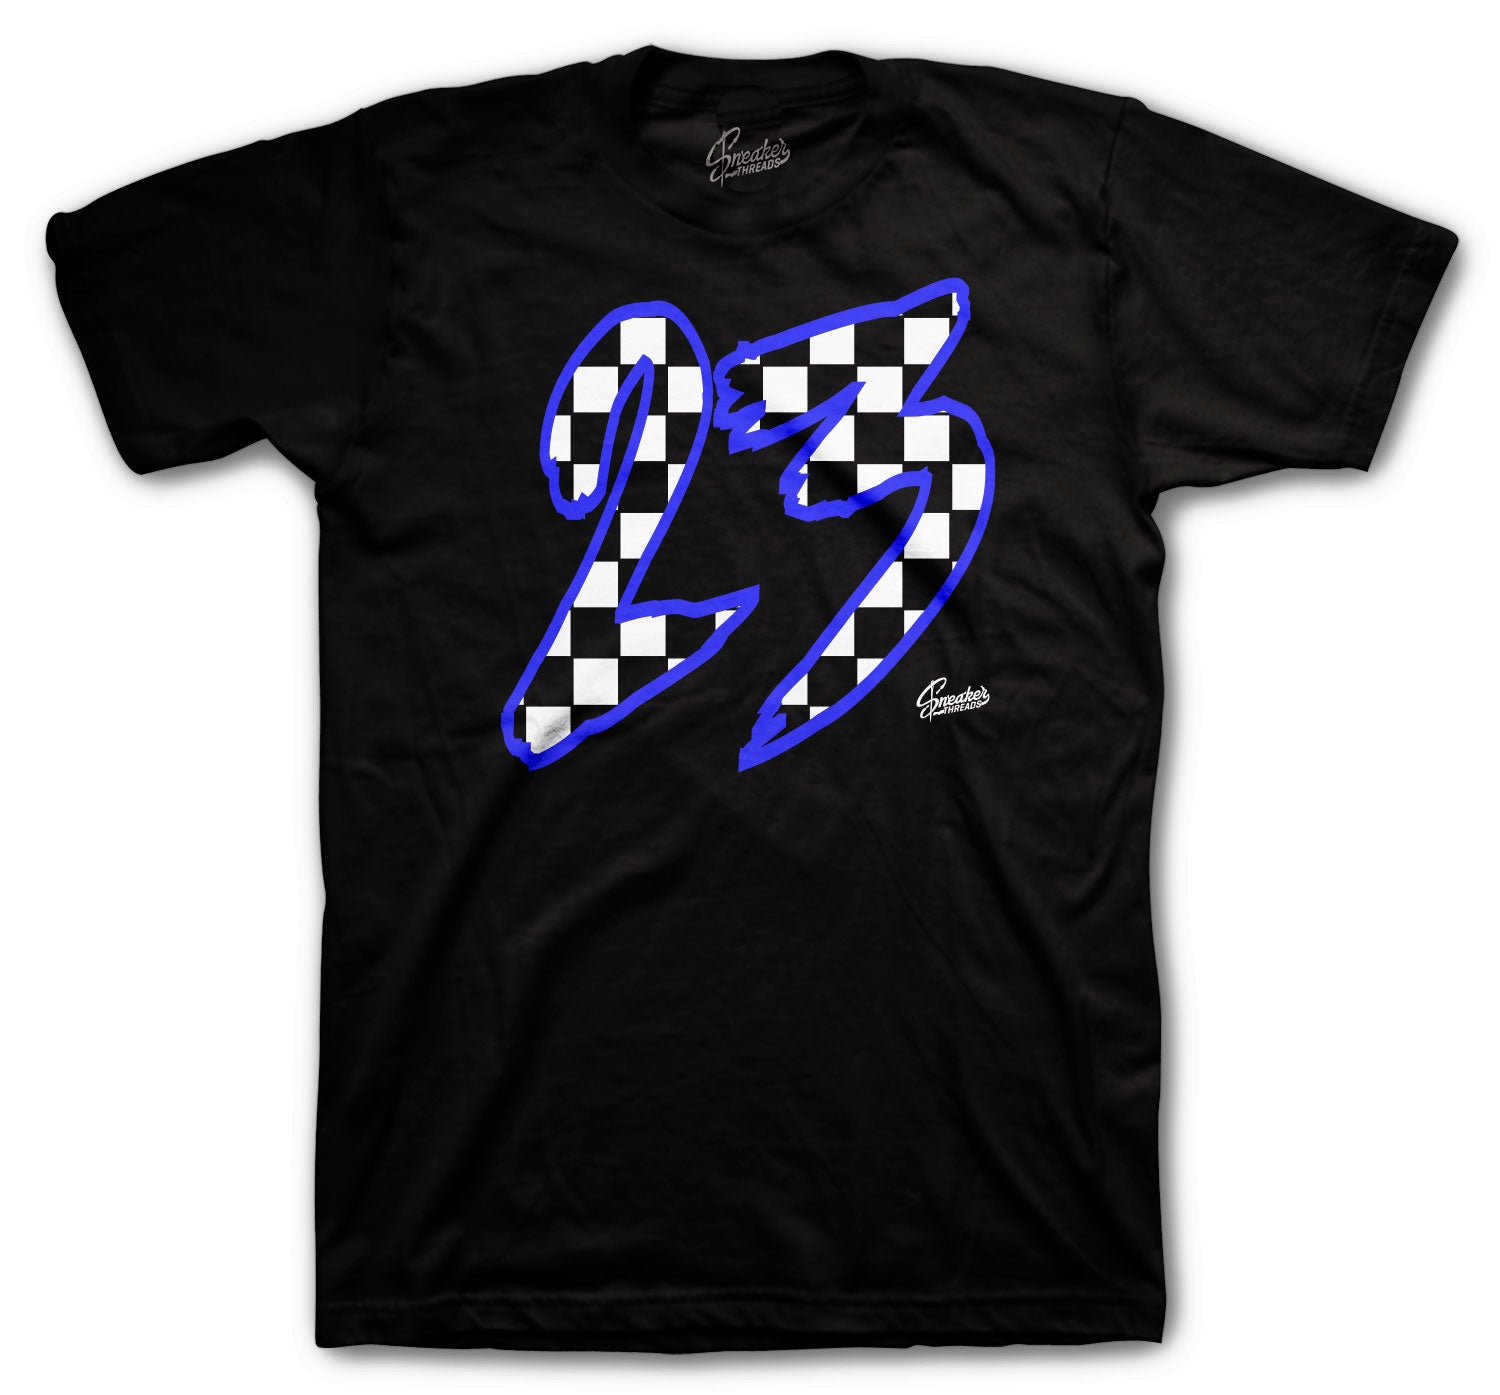 Retro 5 Racer Blue Shirt - Checkered - Black